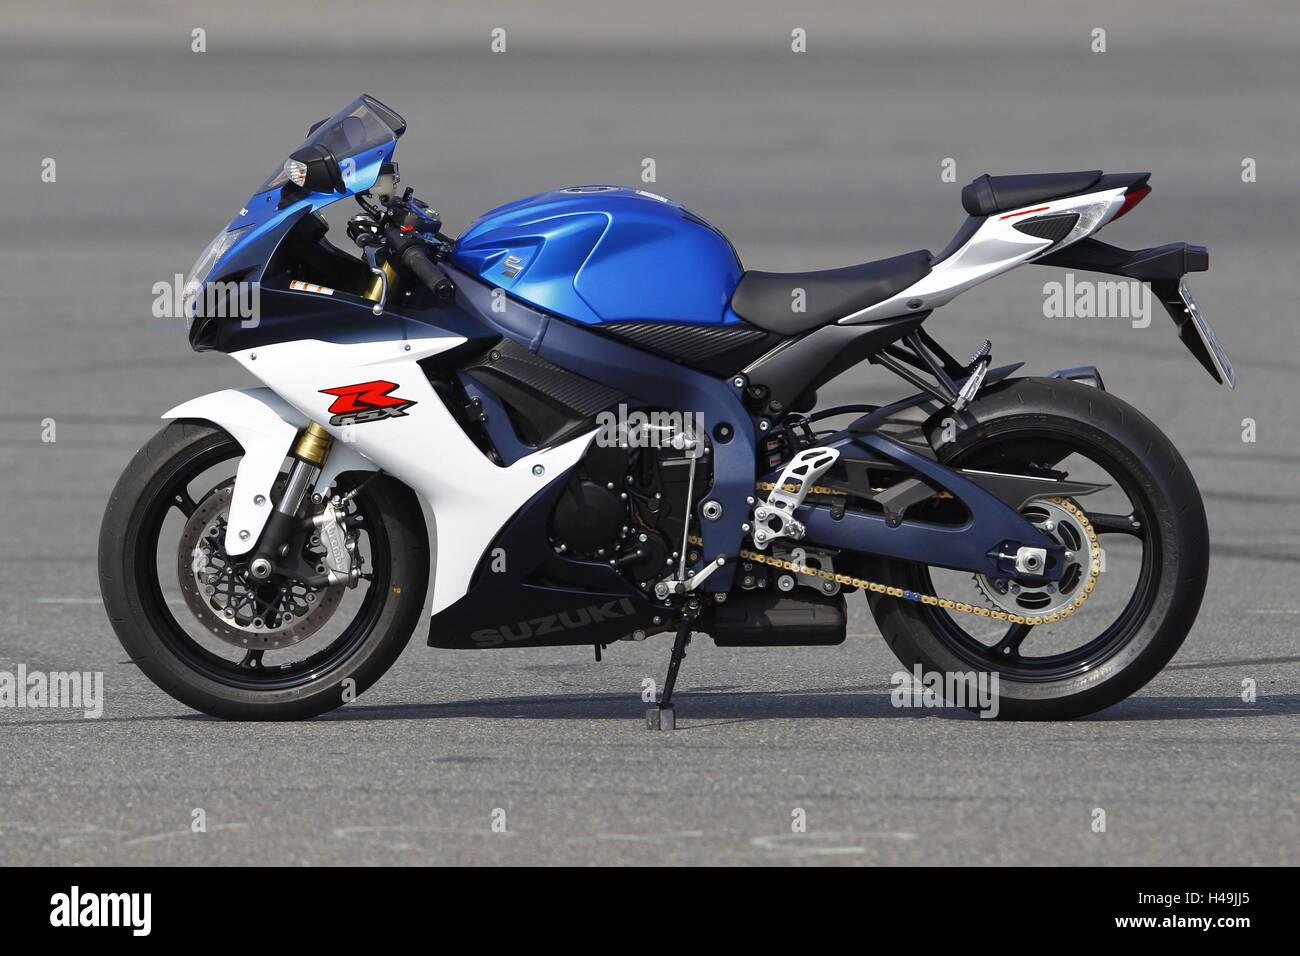 Motociclo, pagina a sinistra, moto sportive, Suzuki GSX-R 750, Foto Stock